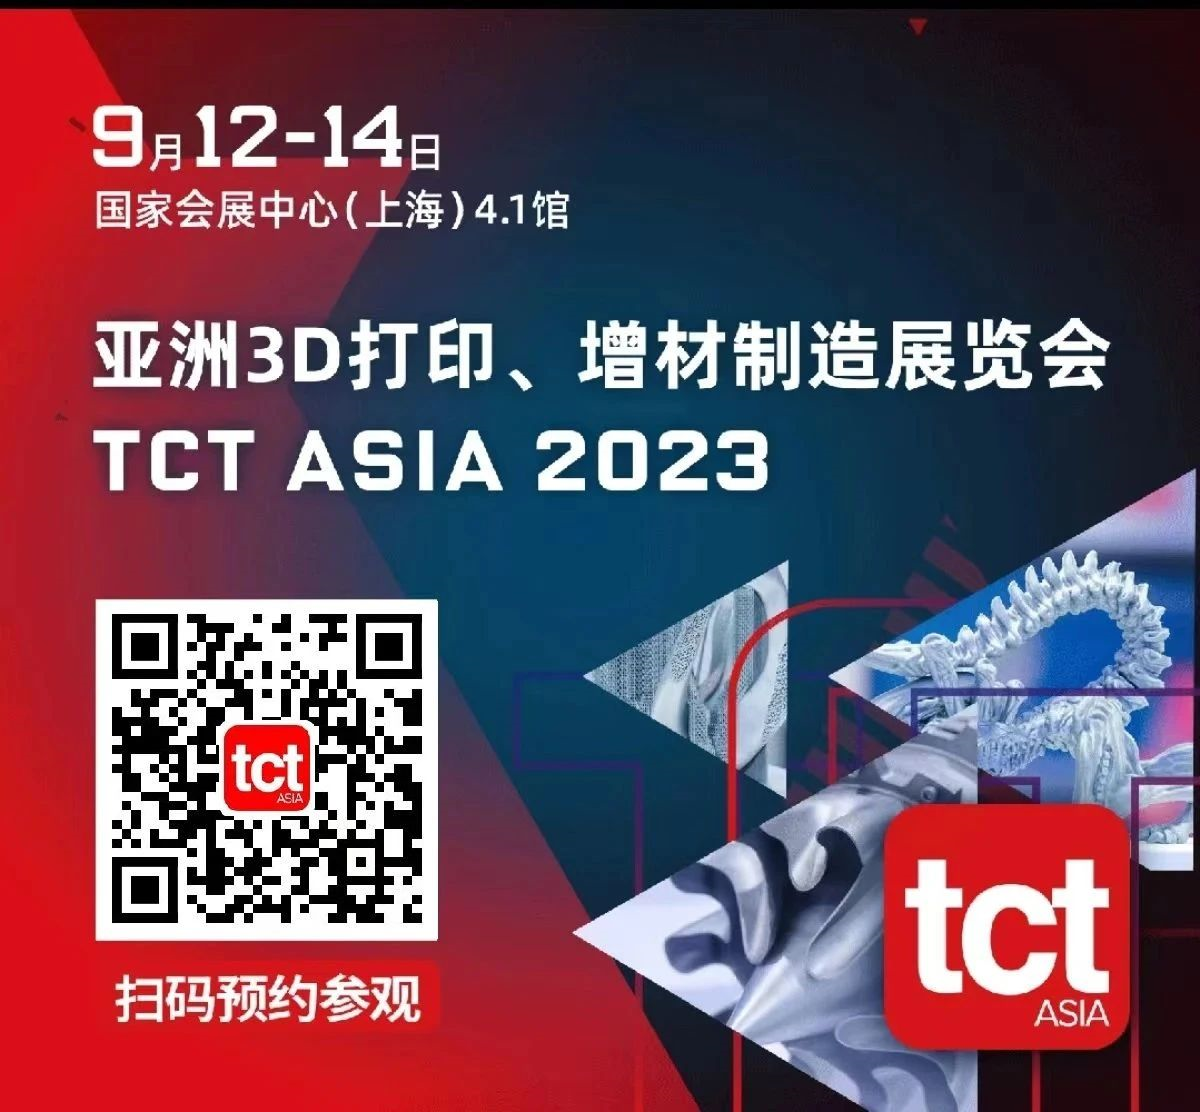 展会邀请｜山东雷石与您相约2023 TCT亚洲展